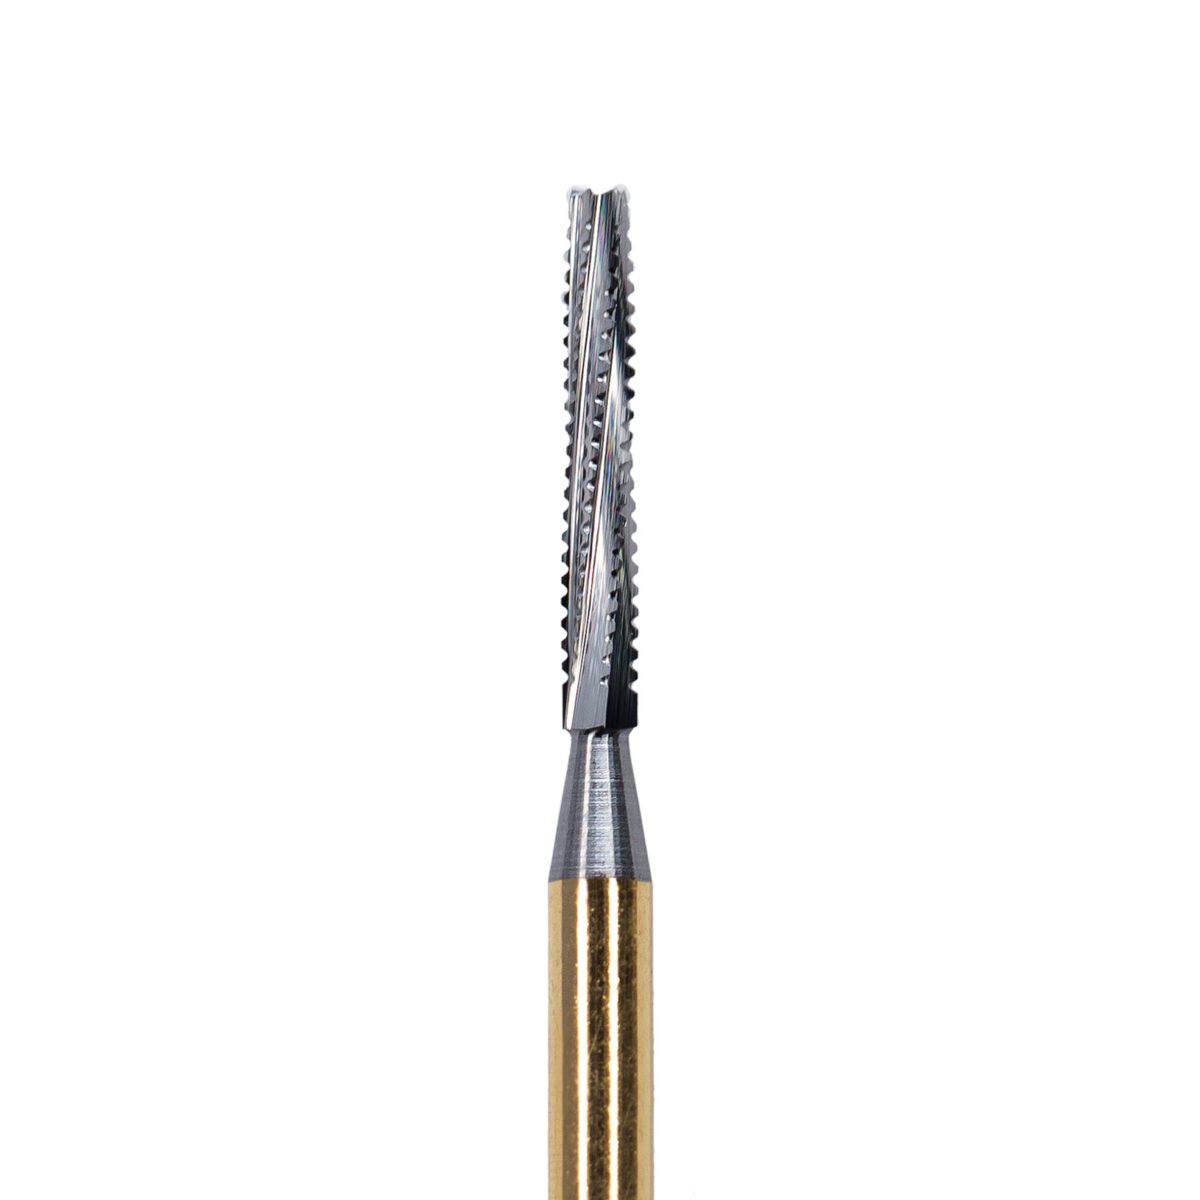 DK 654 B Supra — Corona de perforación 1 ¼“ UNC rosca interior